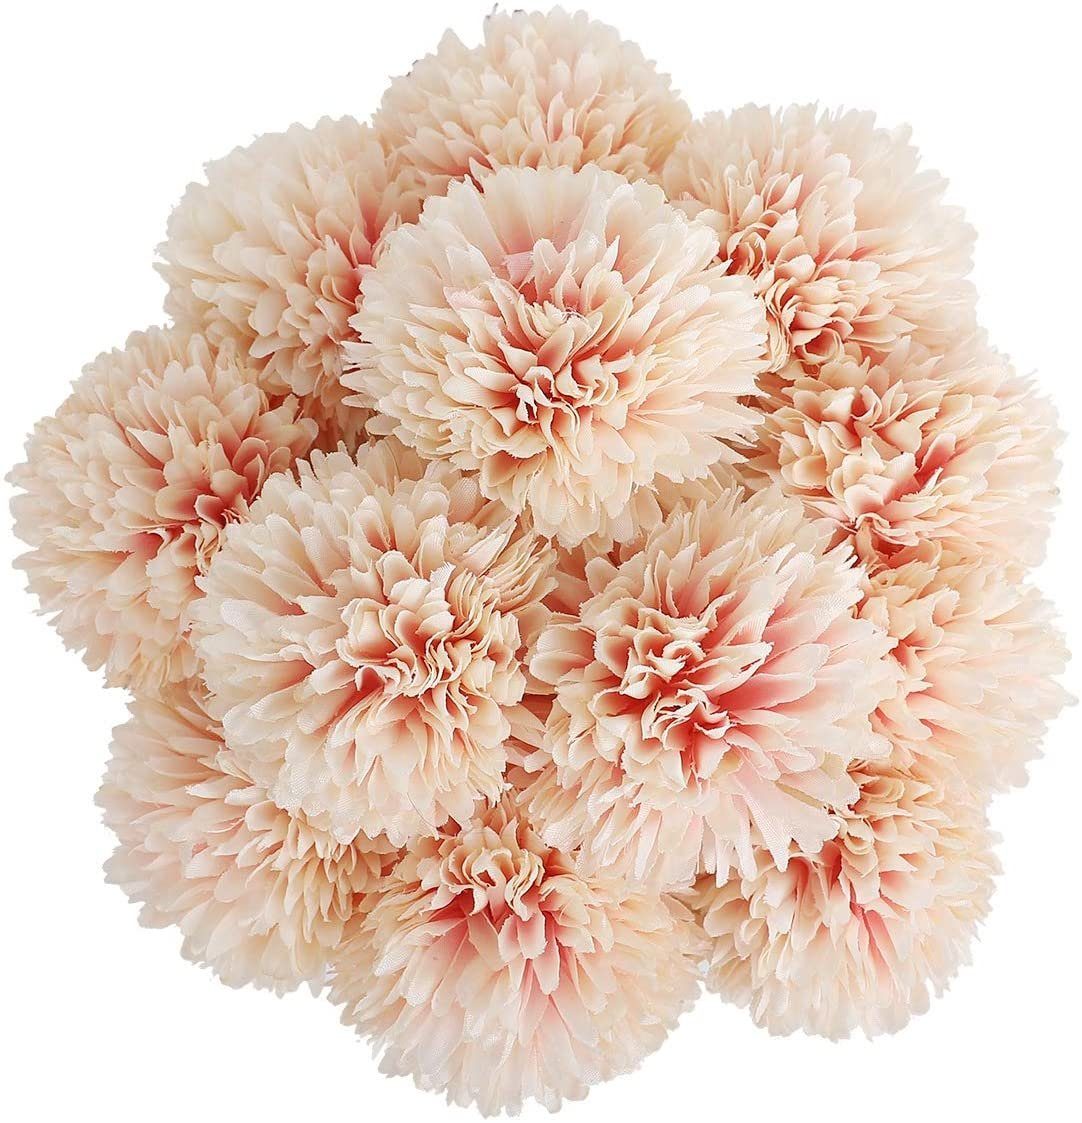 Pompon Jormftte Orange Kugel, Künstliche Kunstblume Blumen,Seide Hortensie